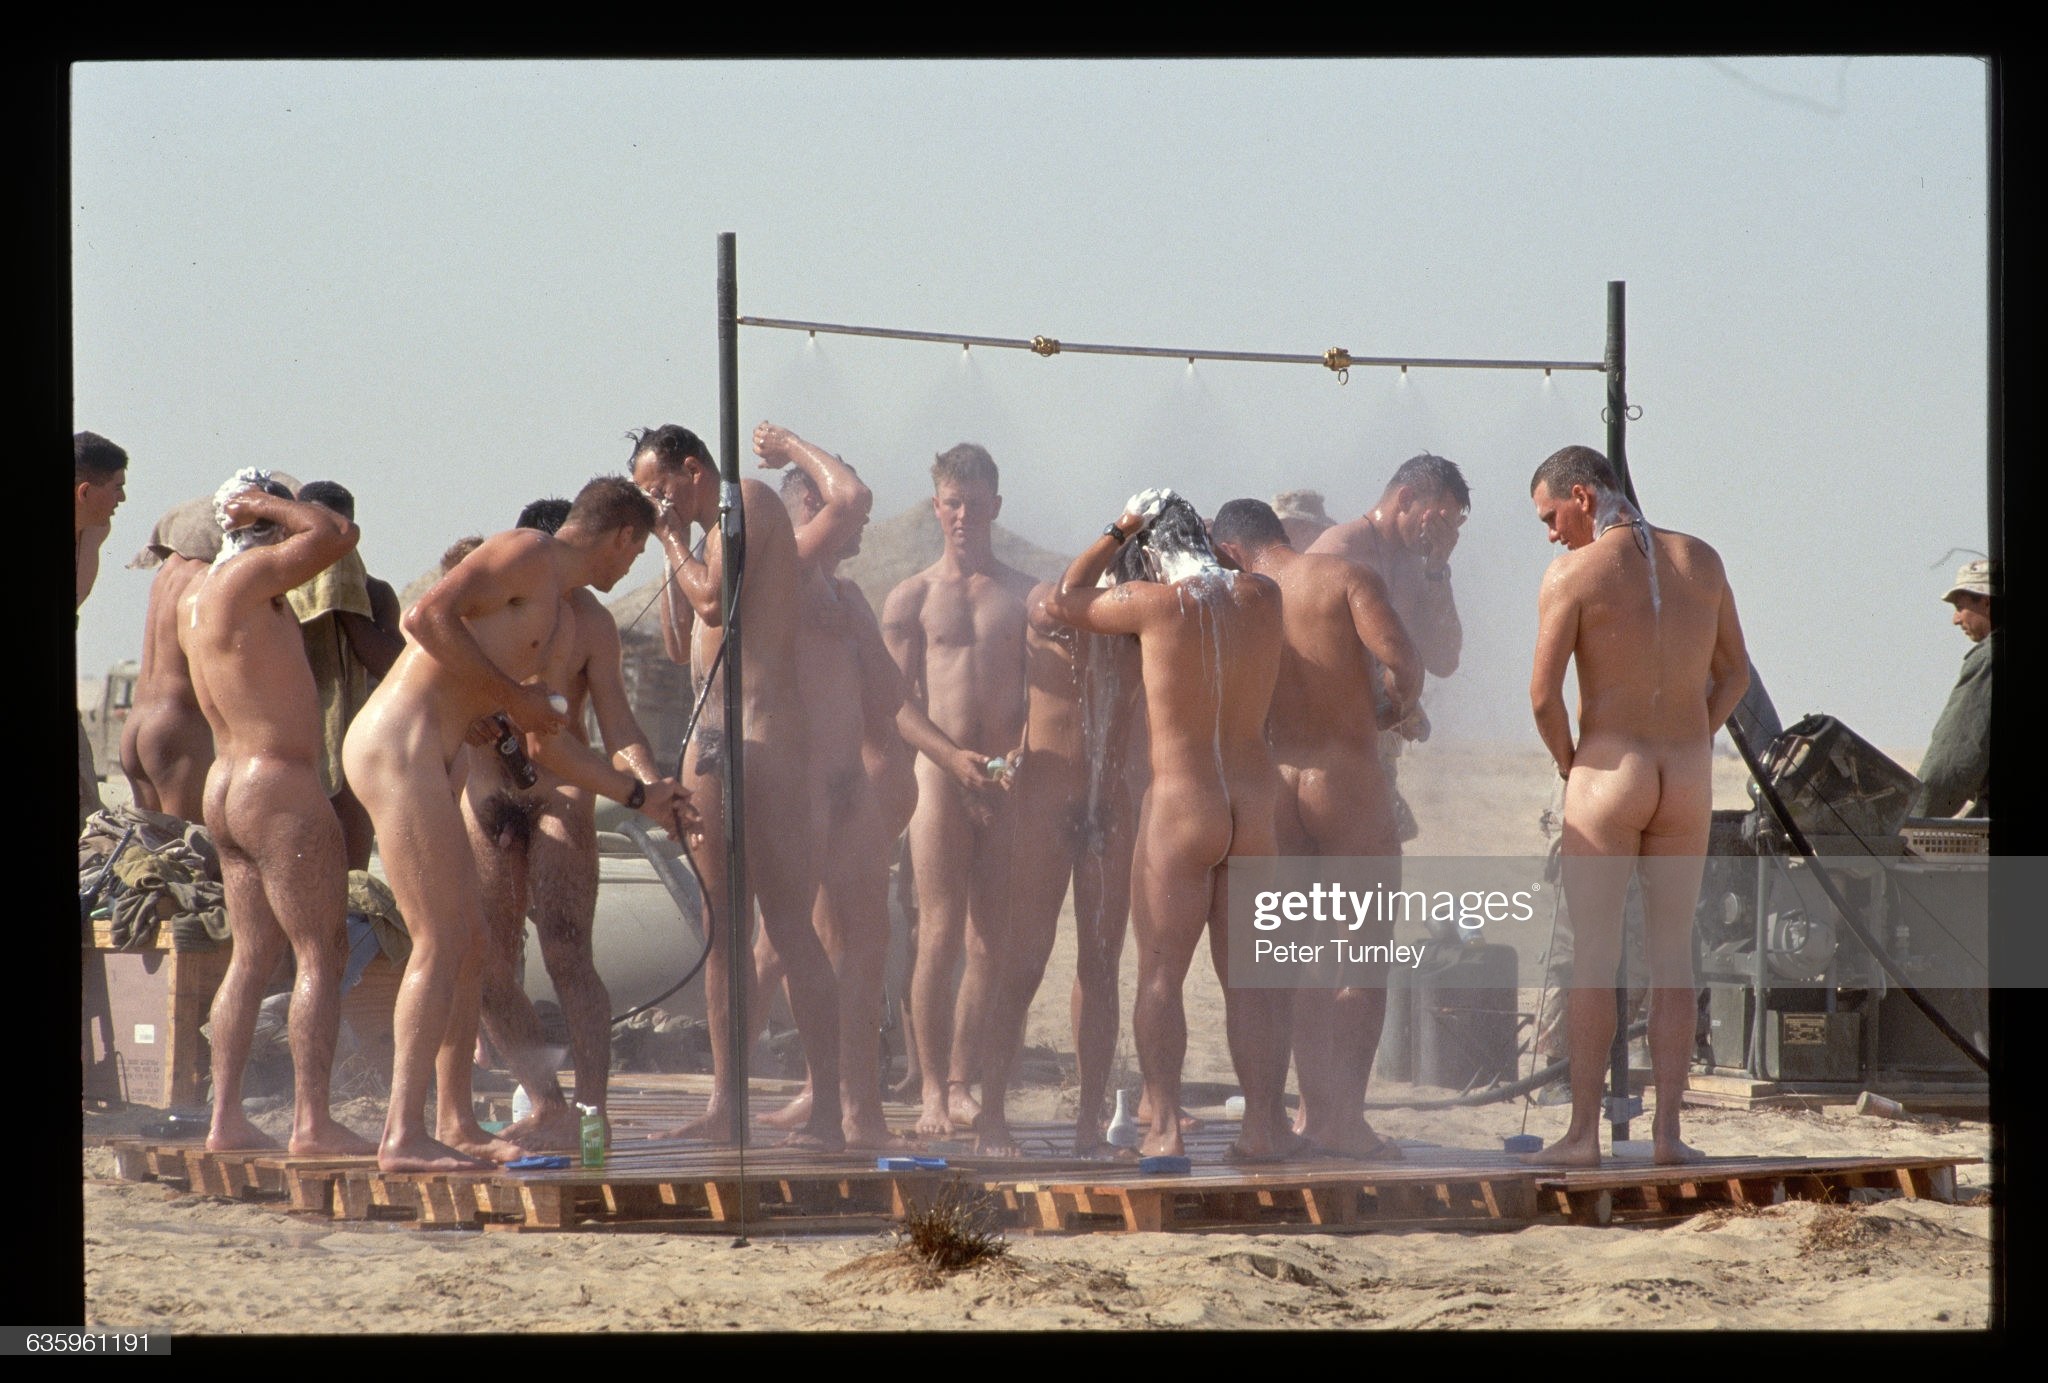 голые мужчины купаются в бане фото 92